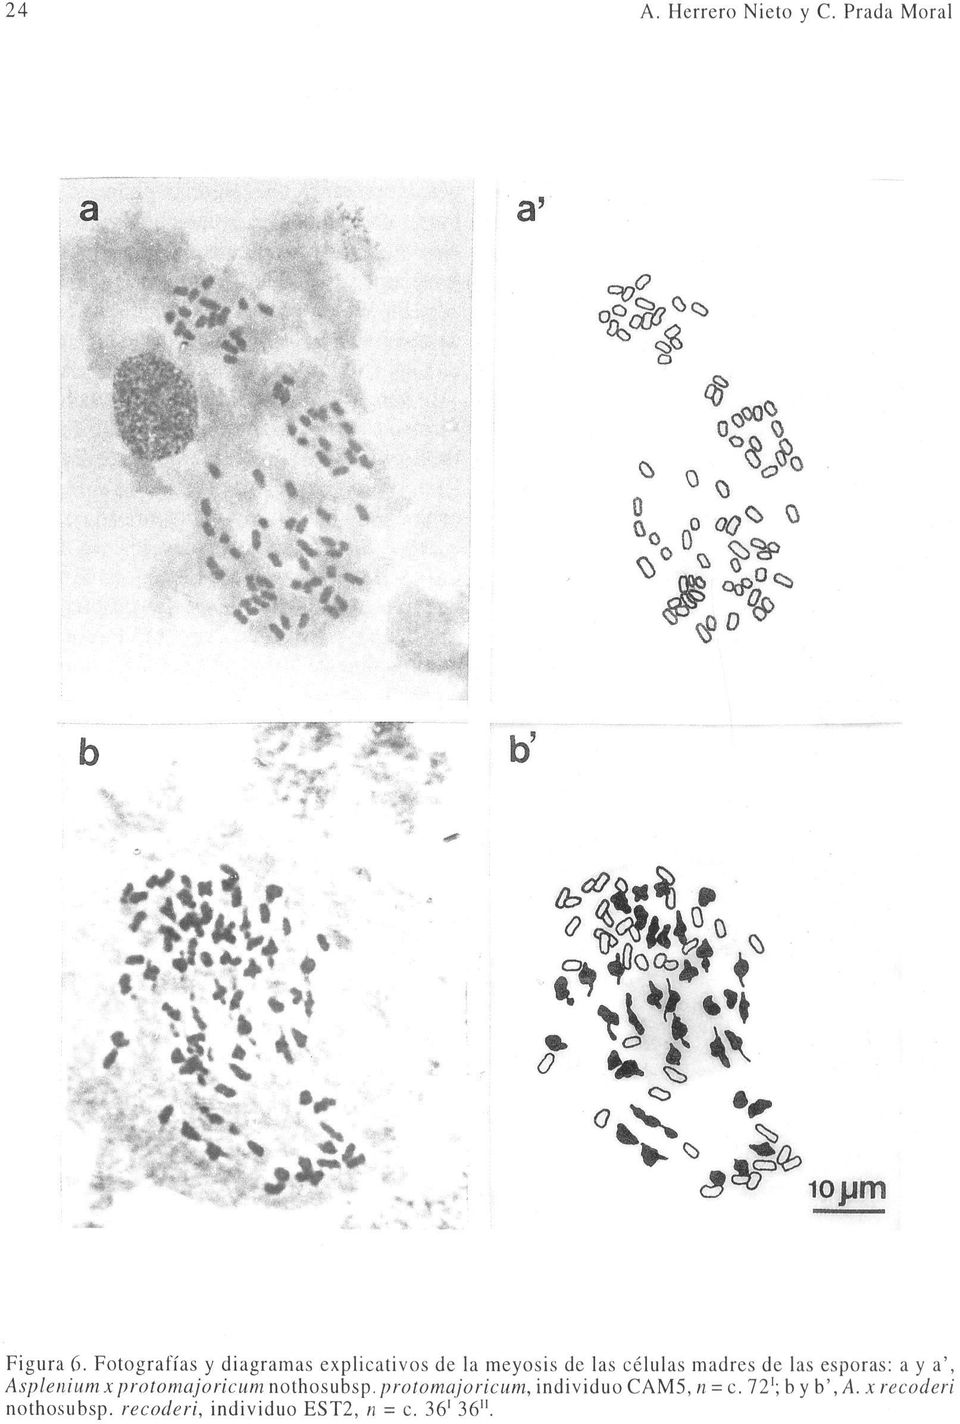 Fotografías y diagramas explicativos de la meyosis de las células madres de las esporas: a